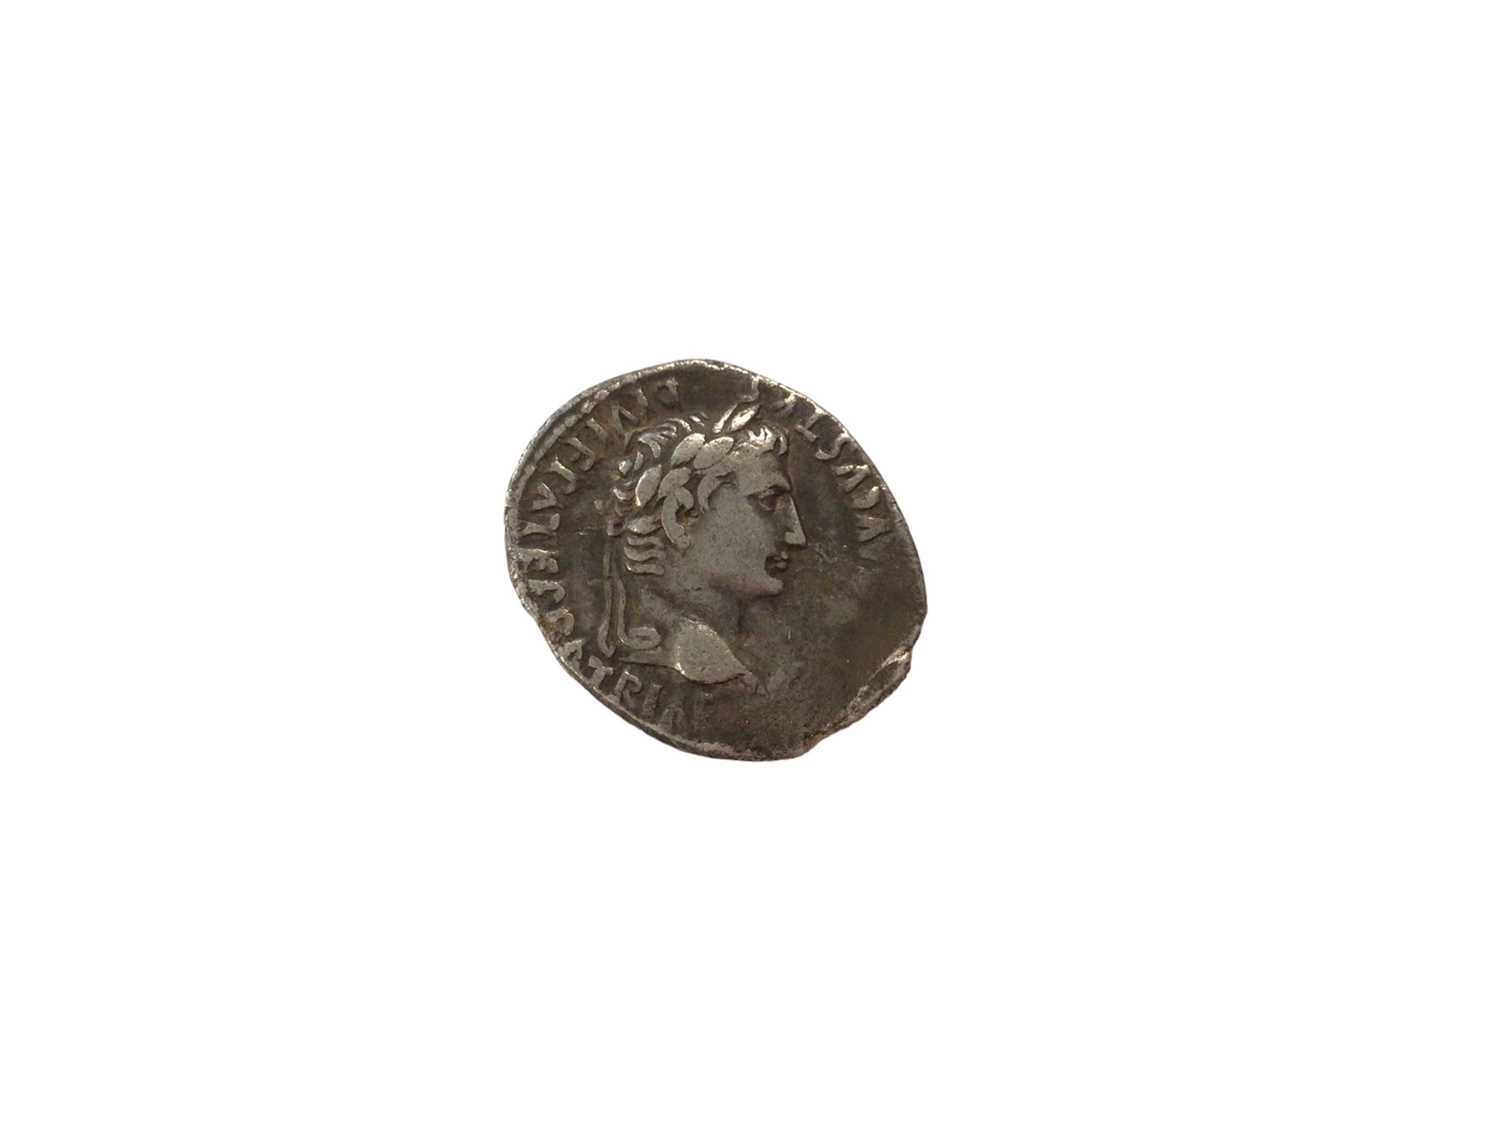 Roman - Silver Denarius Augustus, Mint of Lugdunum 2 BC - AD 4 Rev: Gaius & Lucius Caesars standing